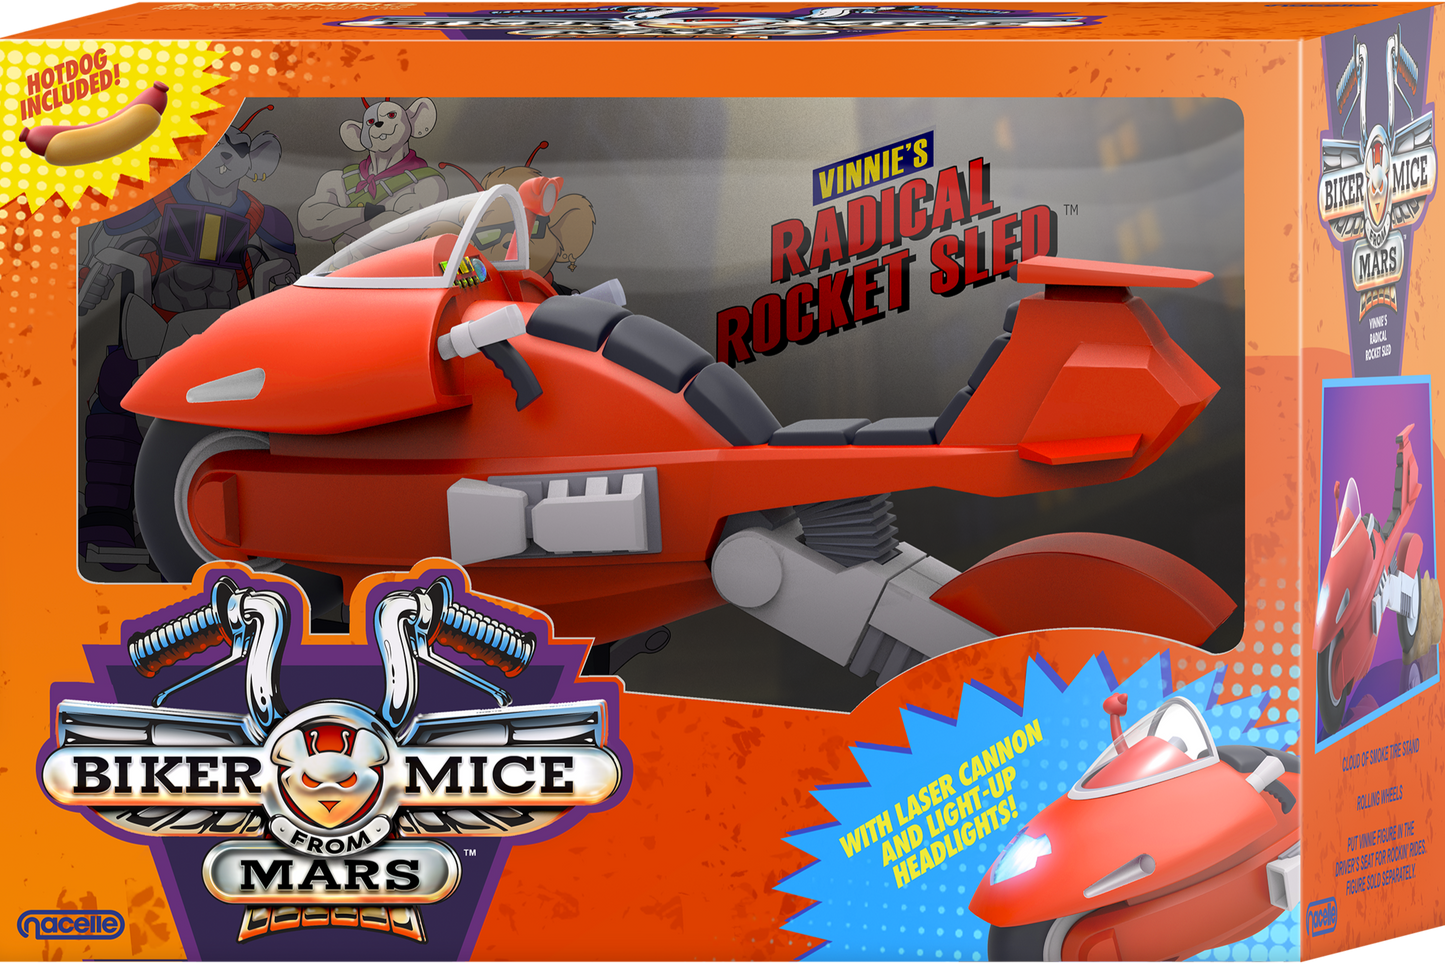 Biker Mice from Mars - Vinnie + Radical Rocket Sled Bundle